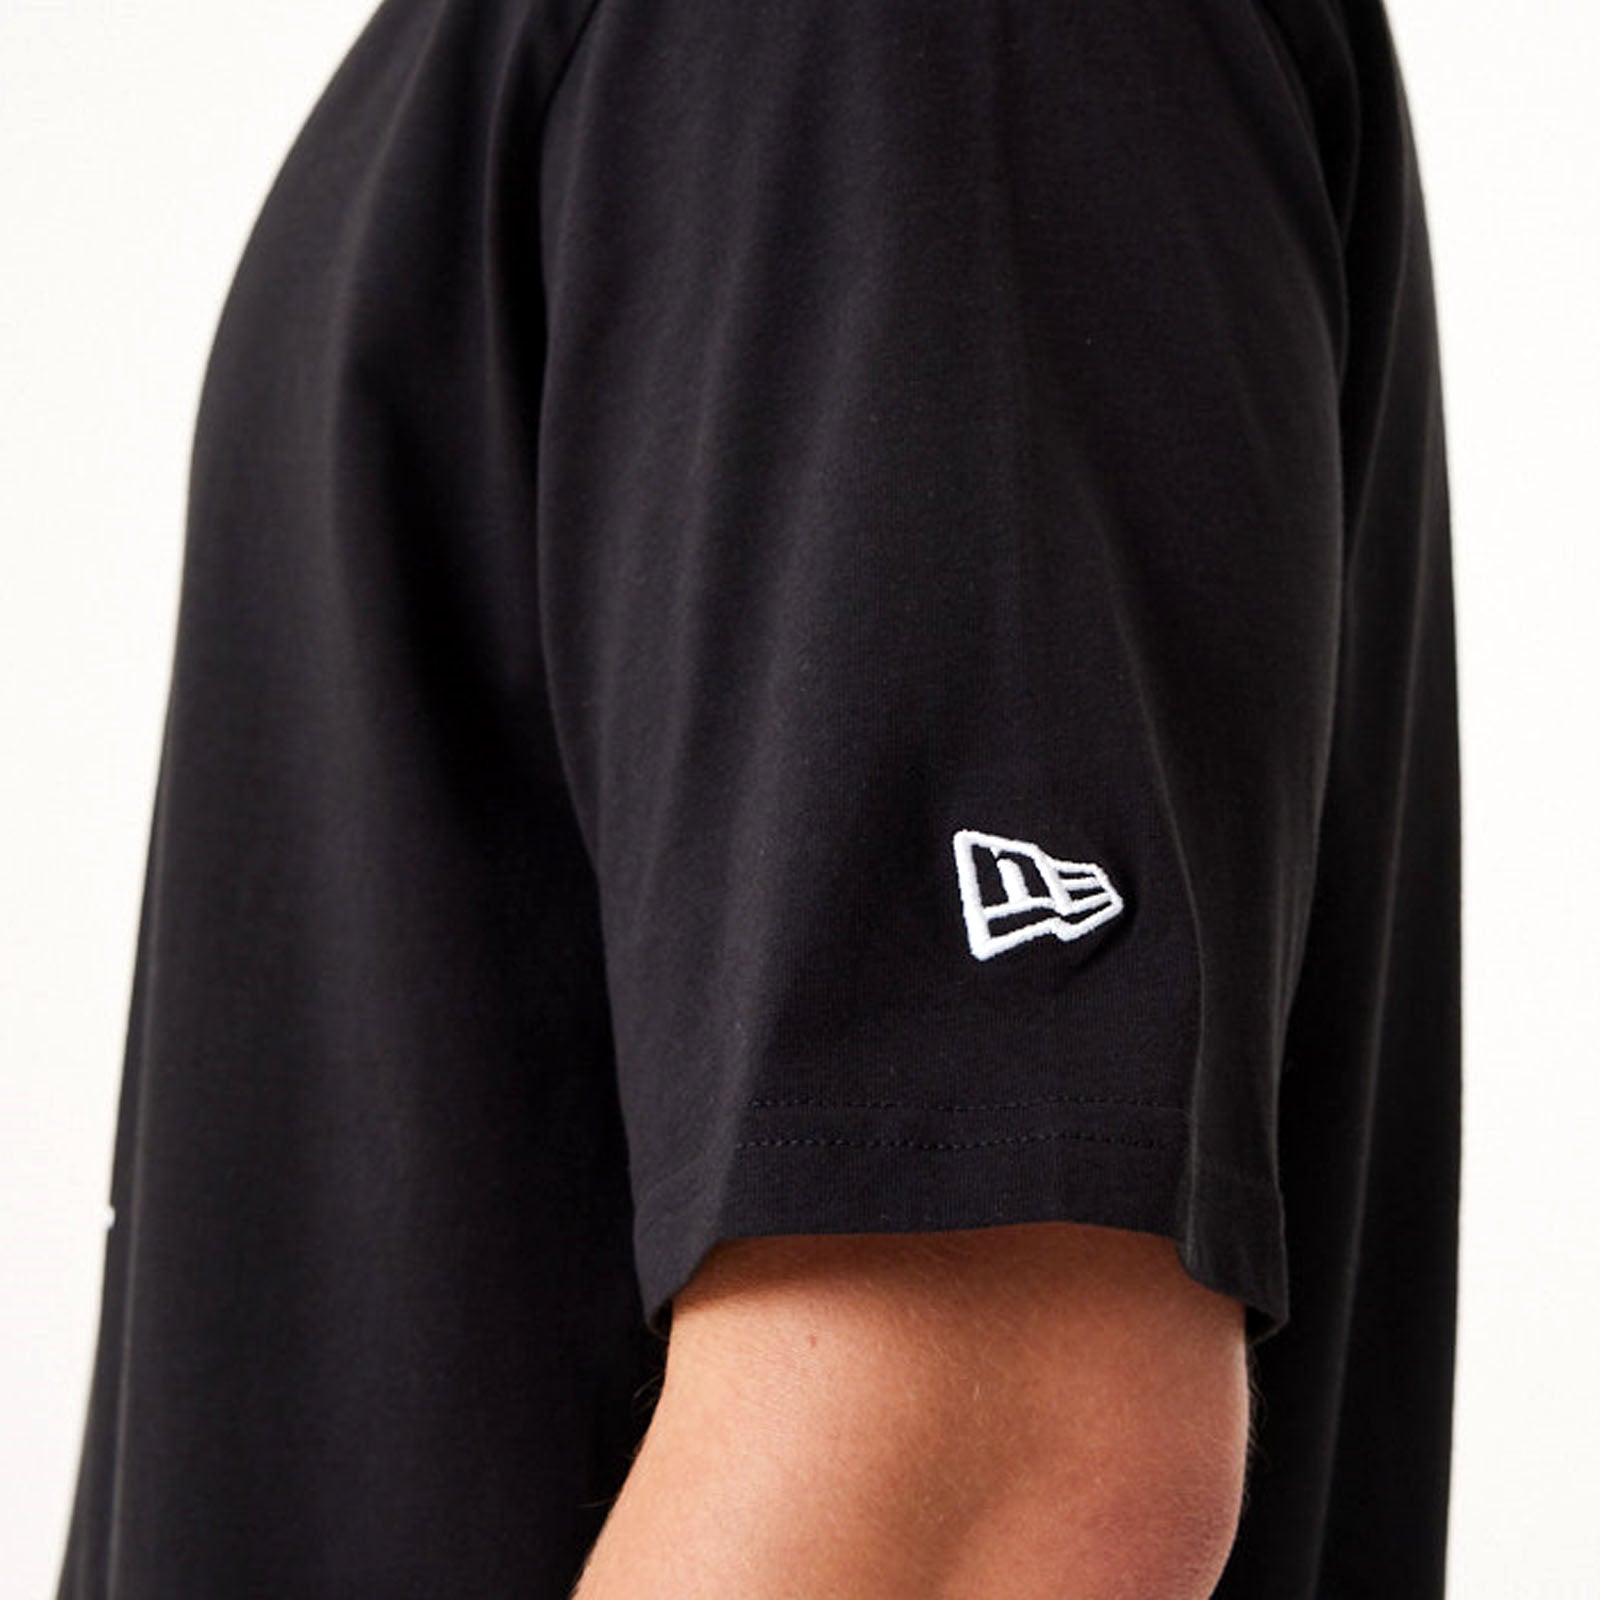 LA Dodgers Colour Essential Black T-Shirt